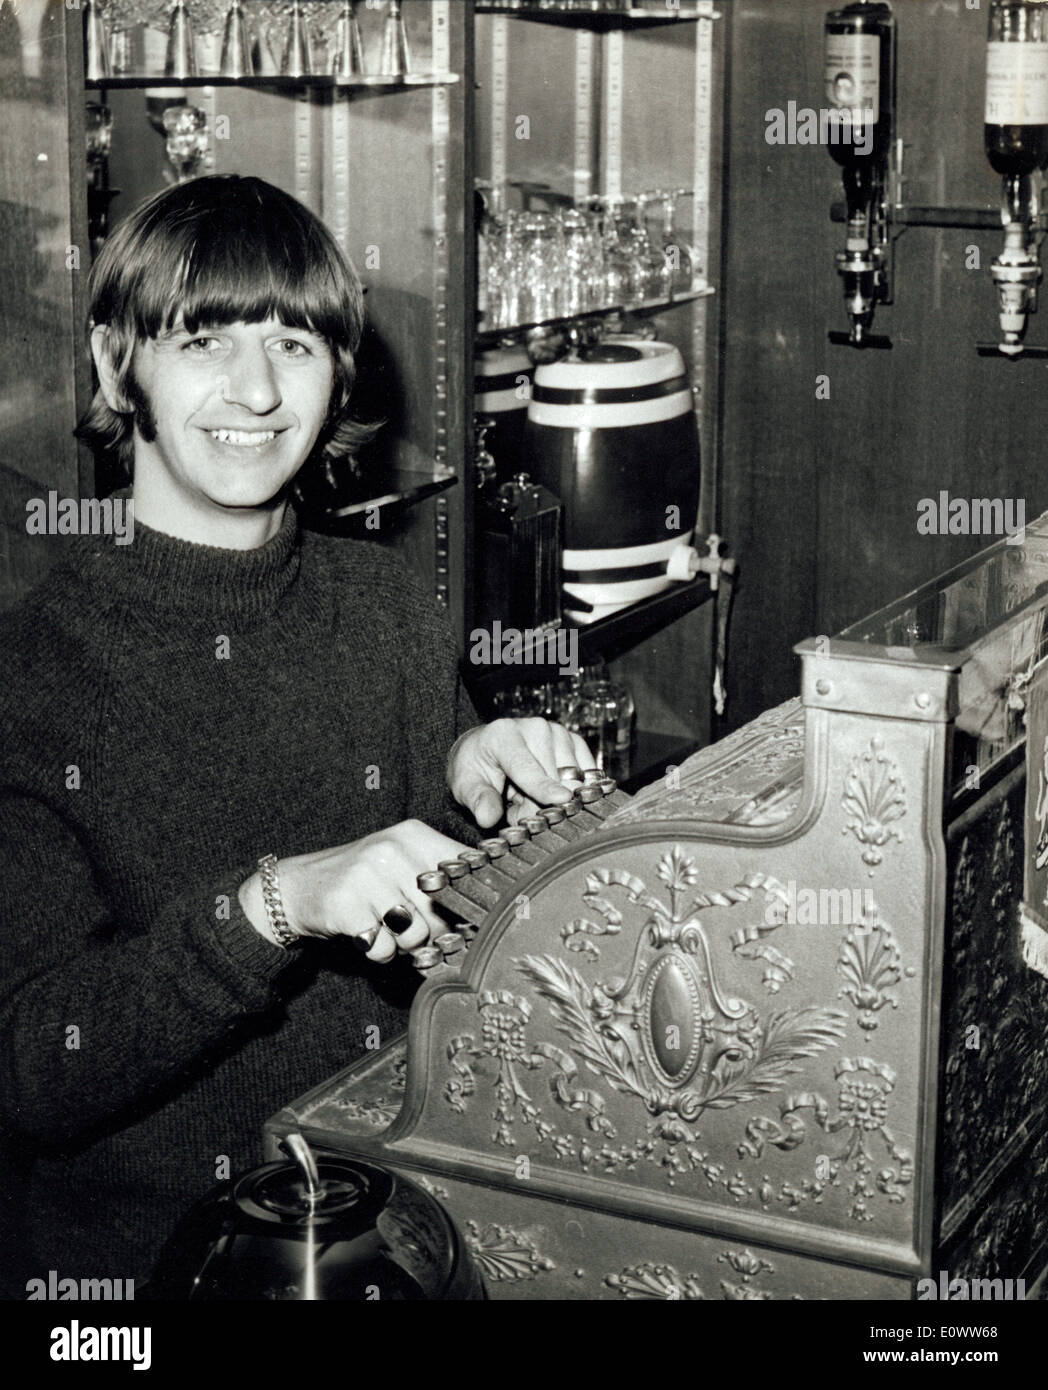 Membro dei Beatles Ringo Starr giocando con un vecchio registratore di cassa presso la sua casa bar Foto Stock